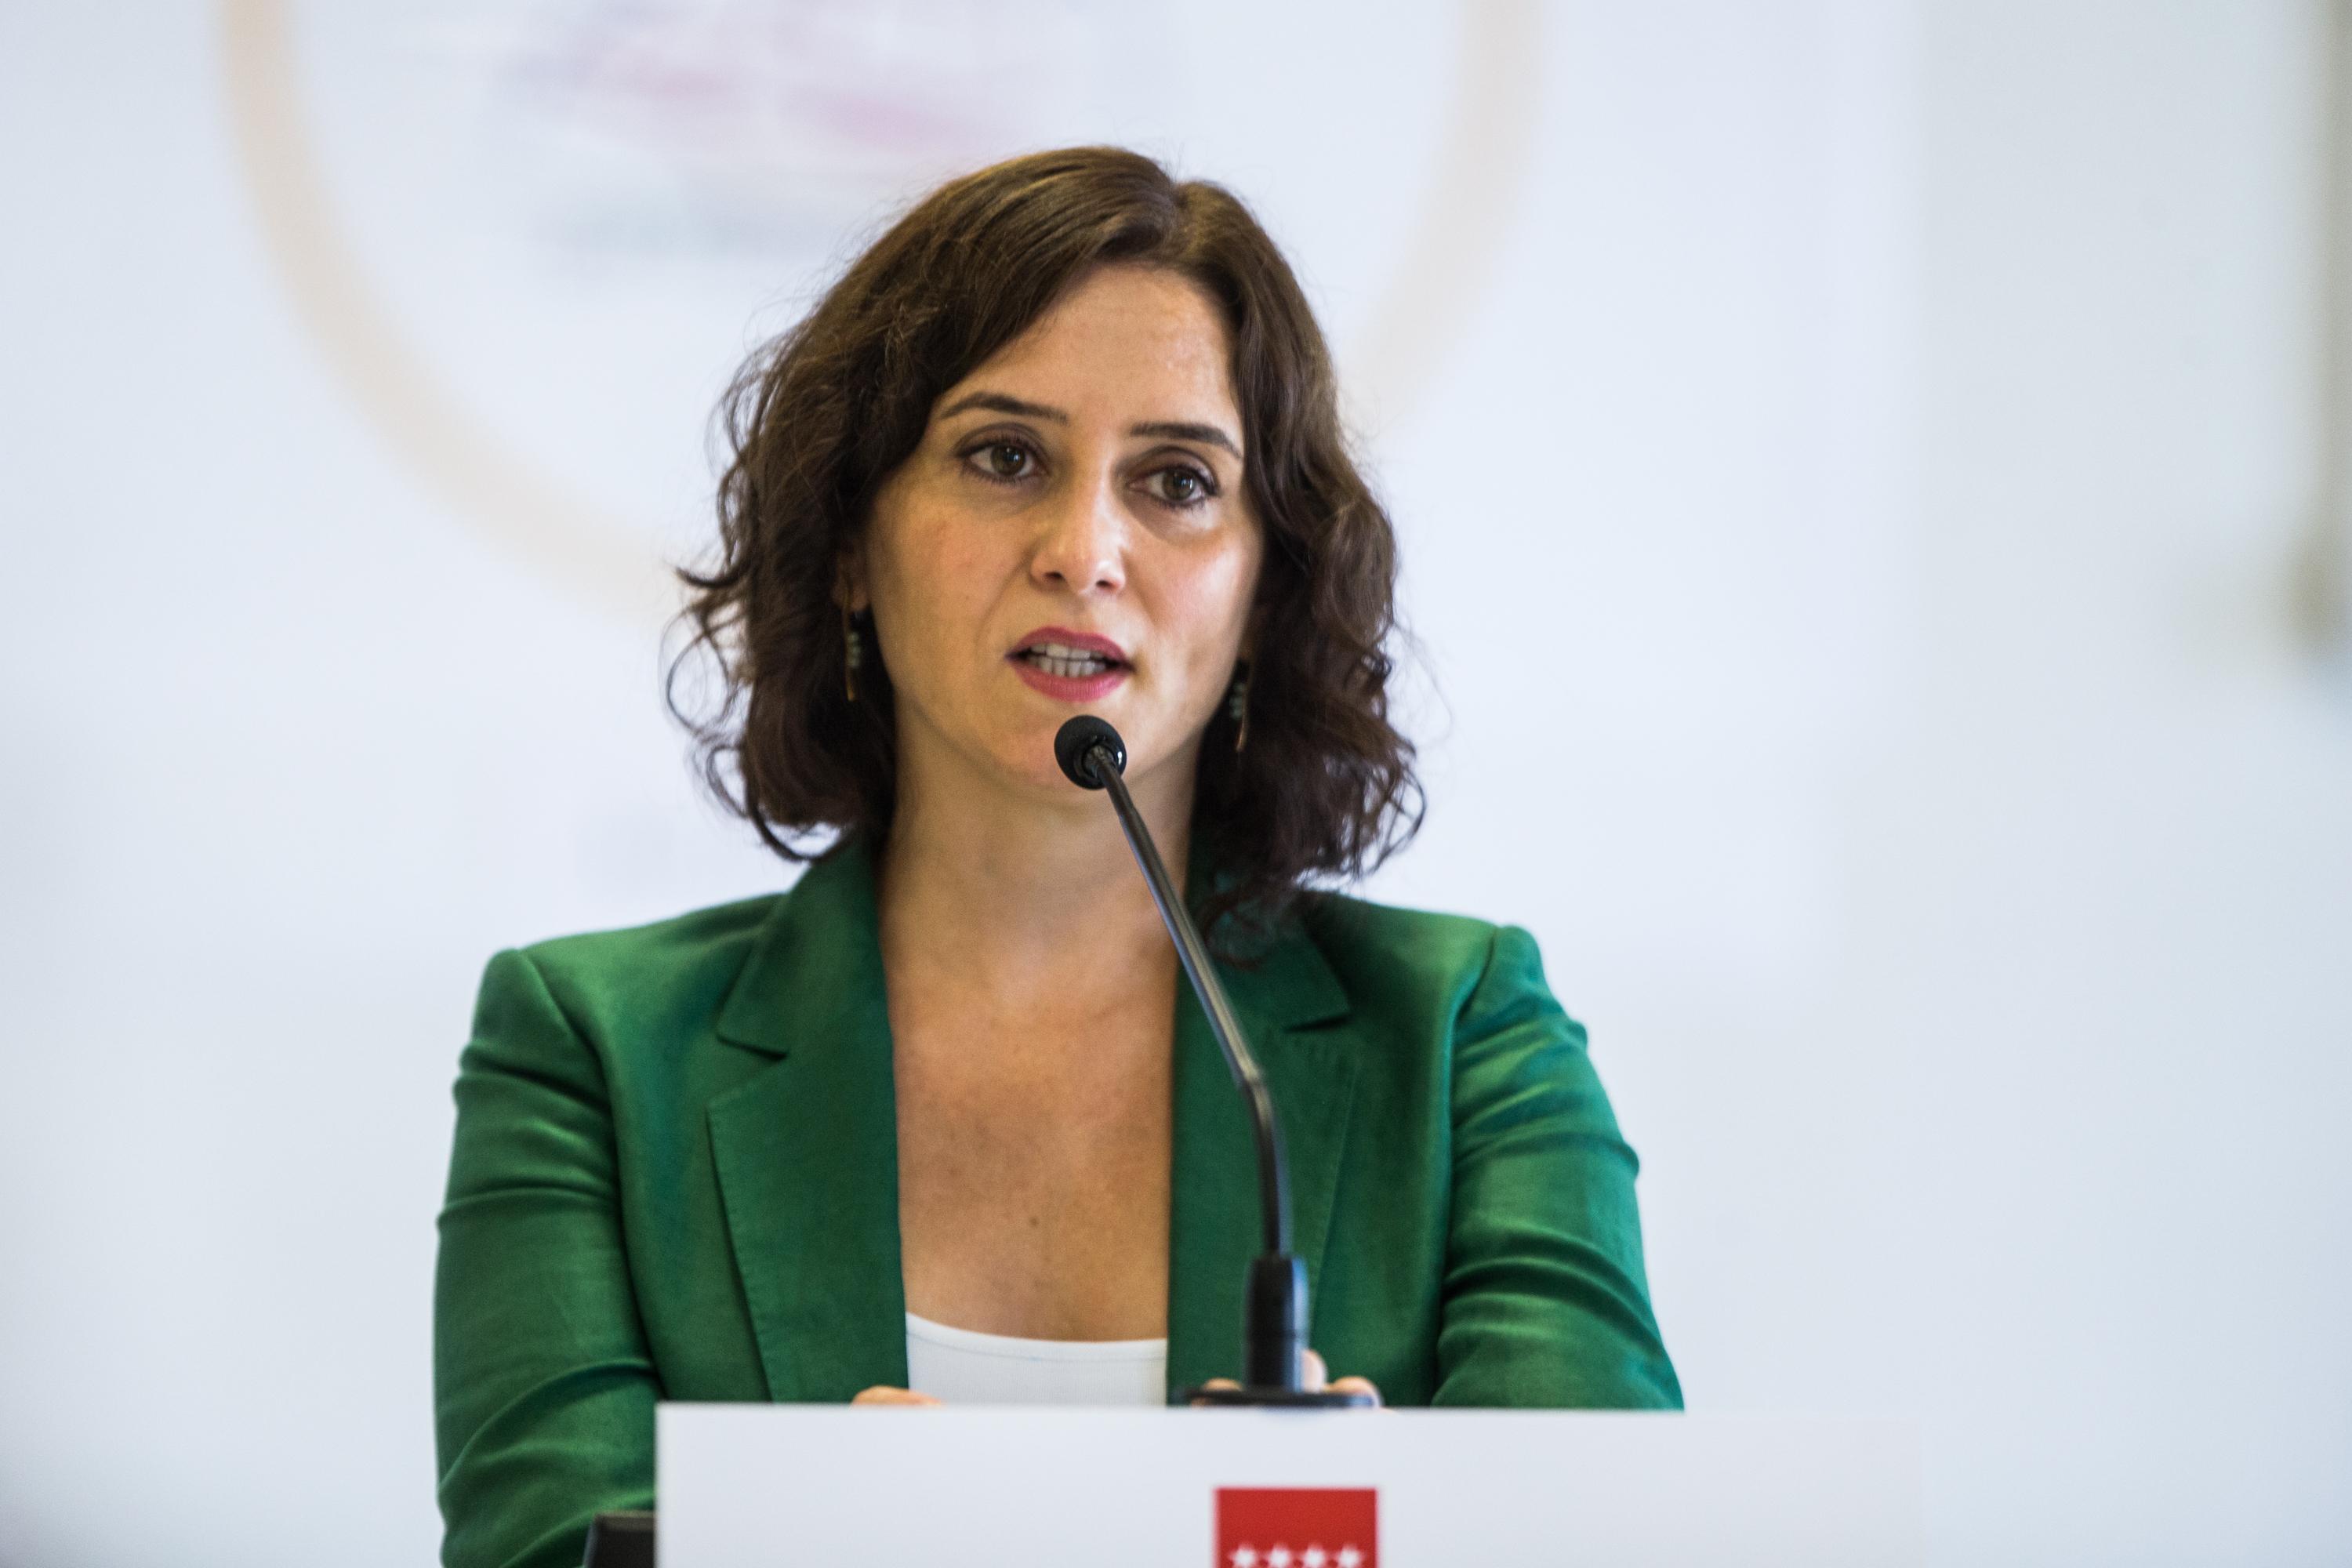 La presidenta de la Comunidad de Madrid, Isabel Díaz Ayuso. Fuente: Europa Press.